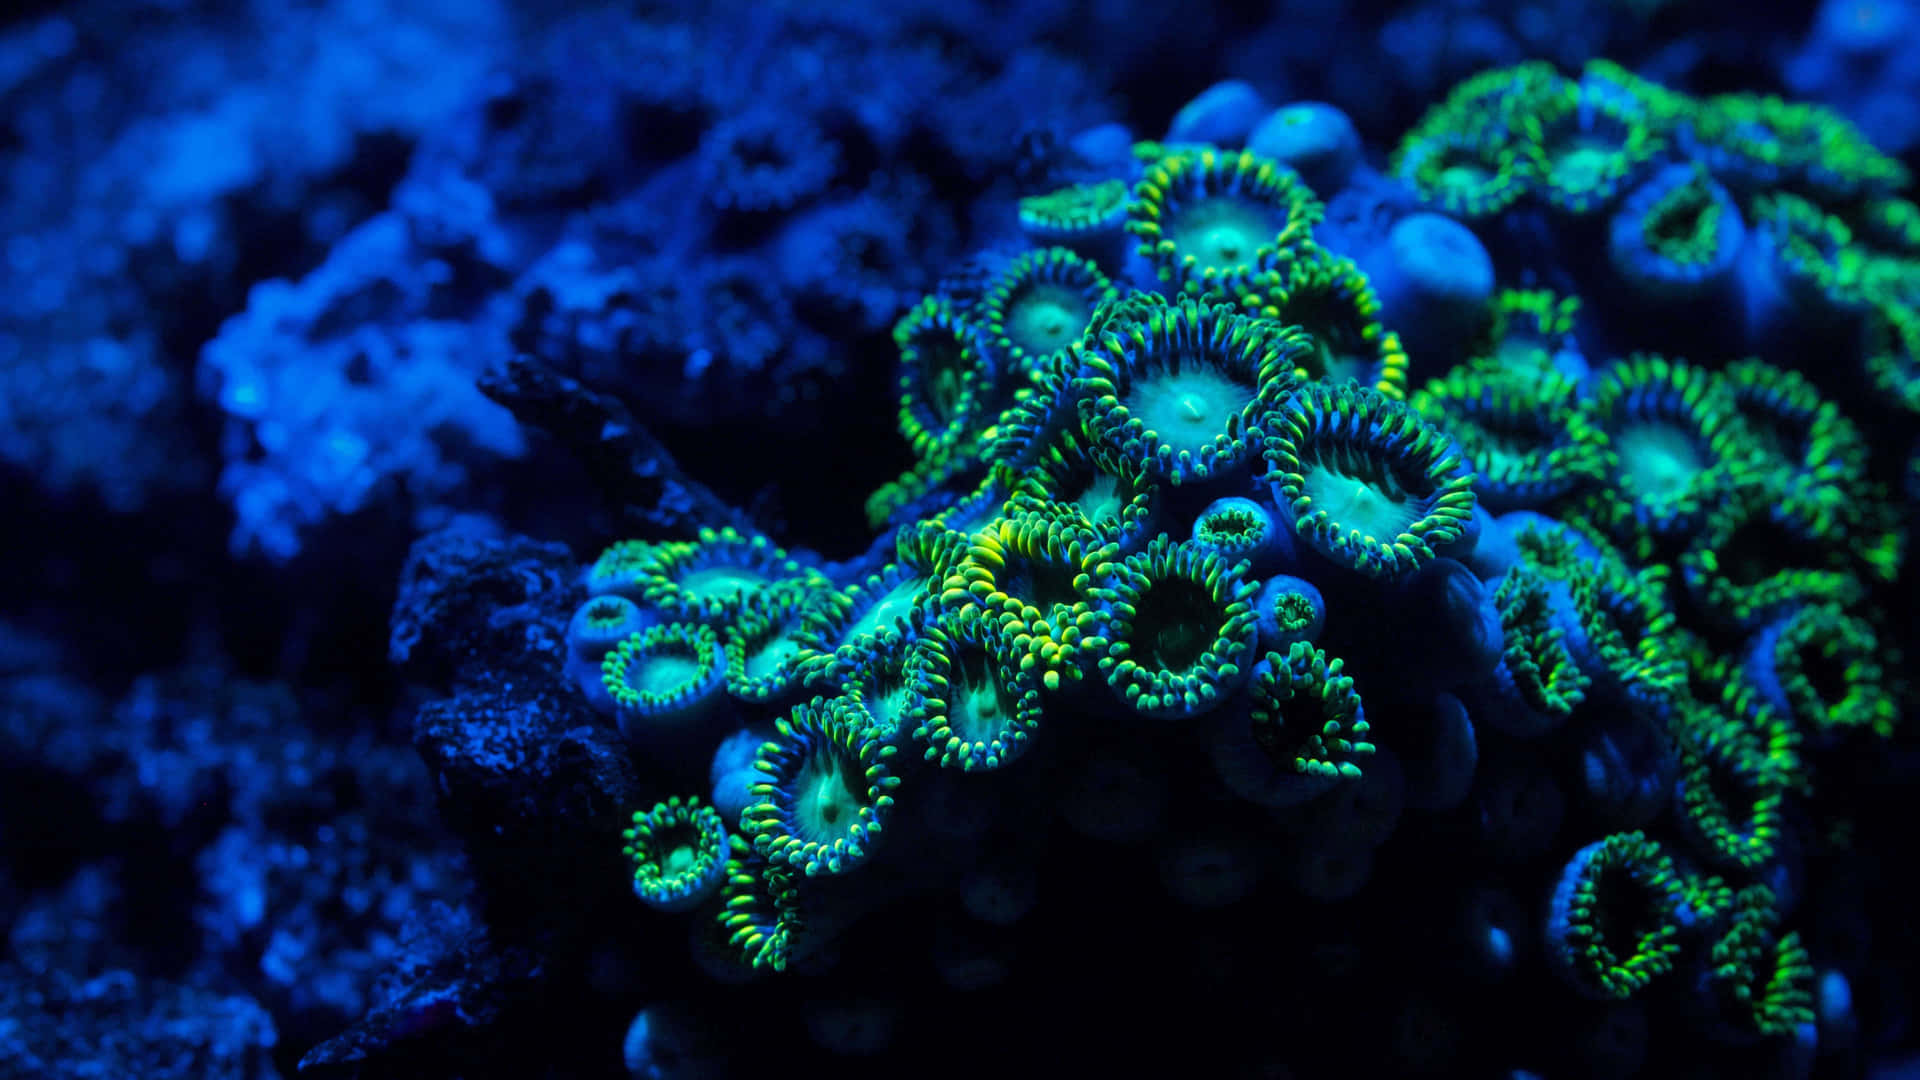 Unabarriera Corallina Colorata Affollata Di Pesci E Altre Forme Di Vita Marina